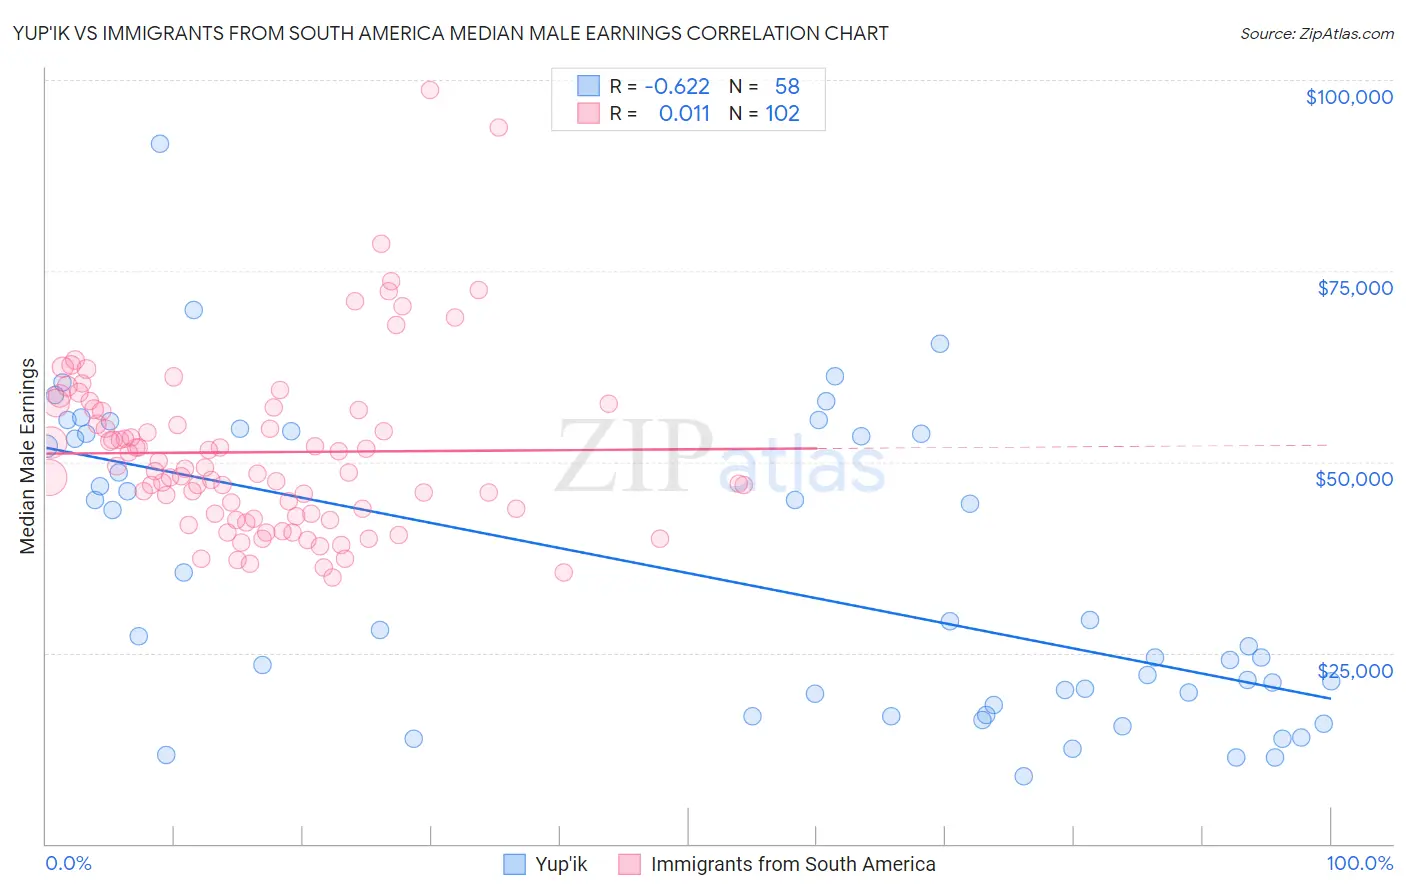 Yup'ik vs Immigrants from South America Median Male Earnings